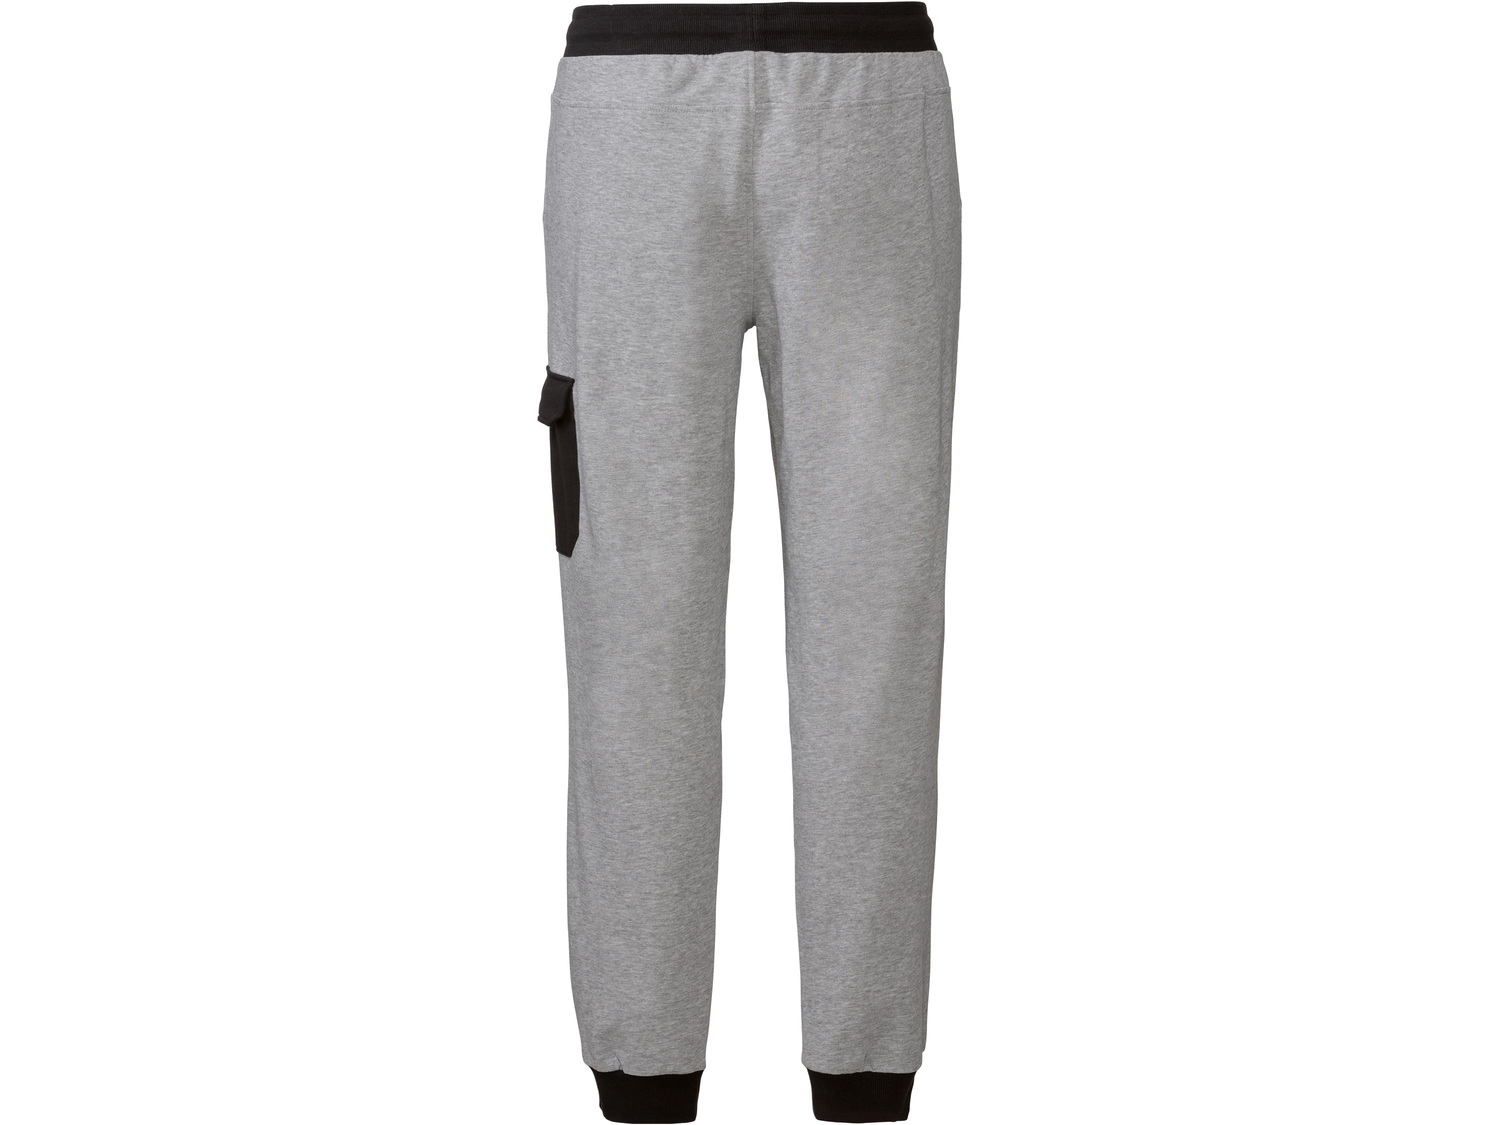 Spodnie dresowe męskie z biobawełną Livergy, cena 39,99 PLN 
- rozmiary: M-XL
- ...